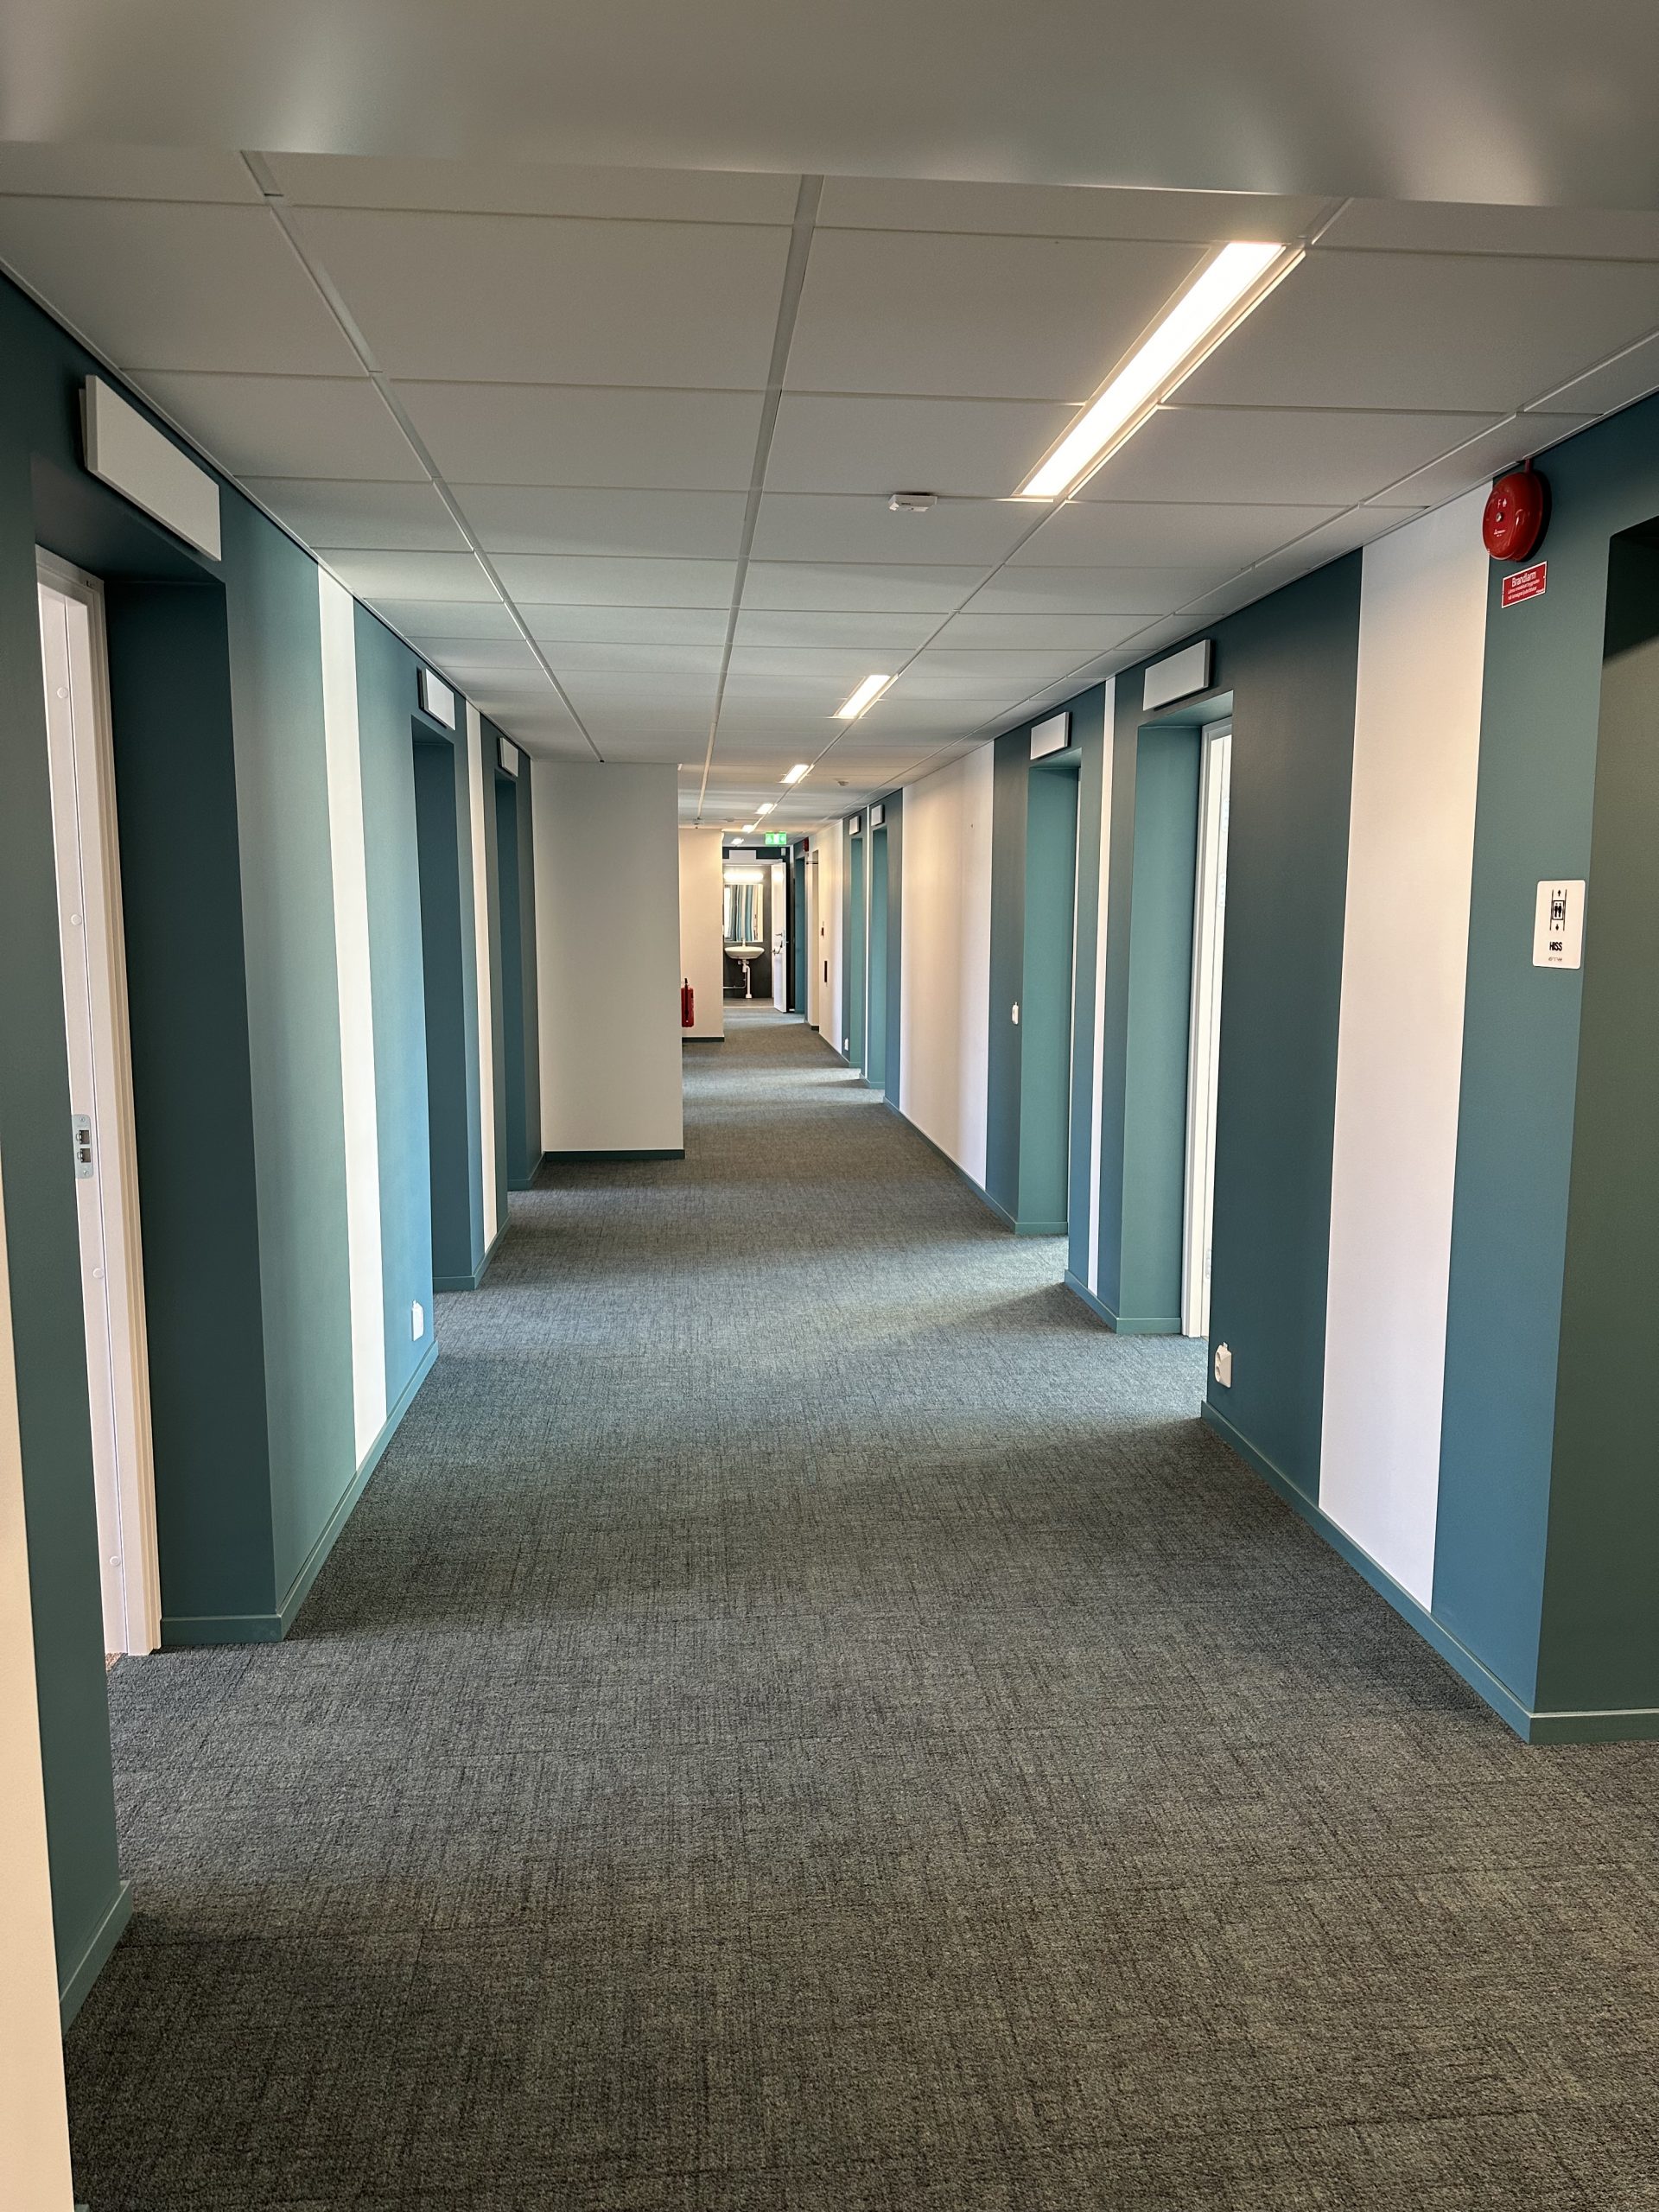 Korridorer med nya golvmattor i grått och härliga färger på väggarna